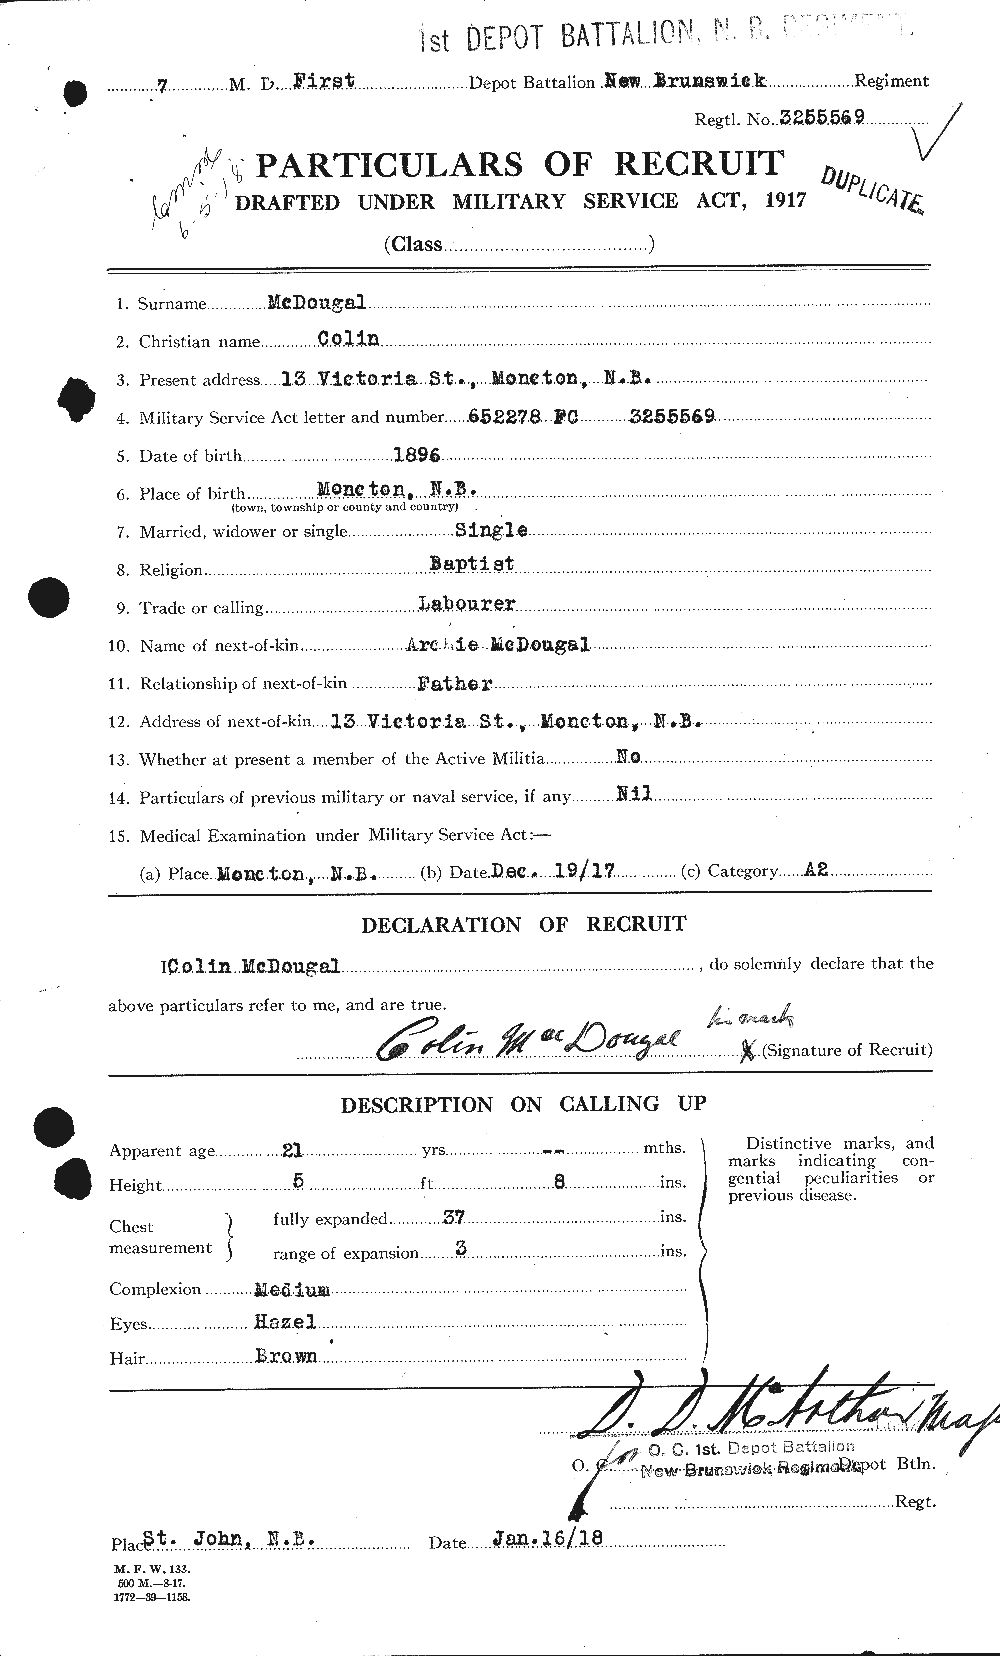 Dossiers du Personnel de la Première Guerre mondiale - CEC 525148a